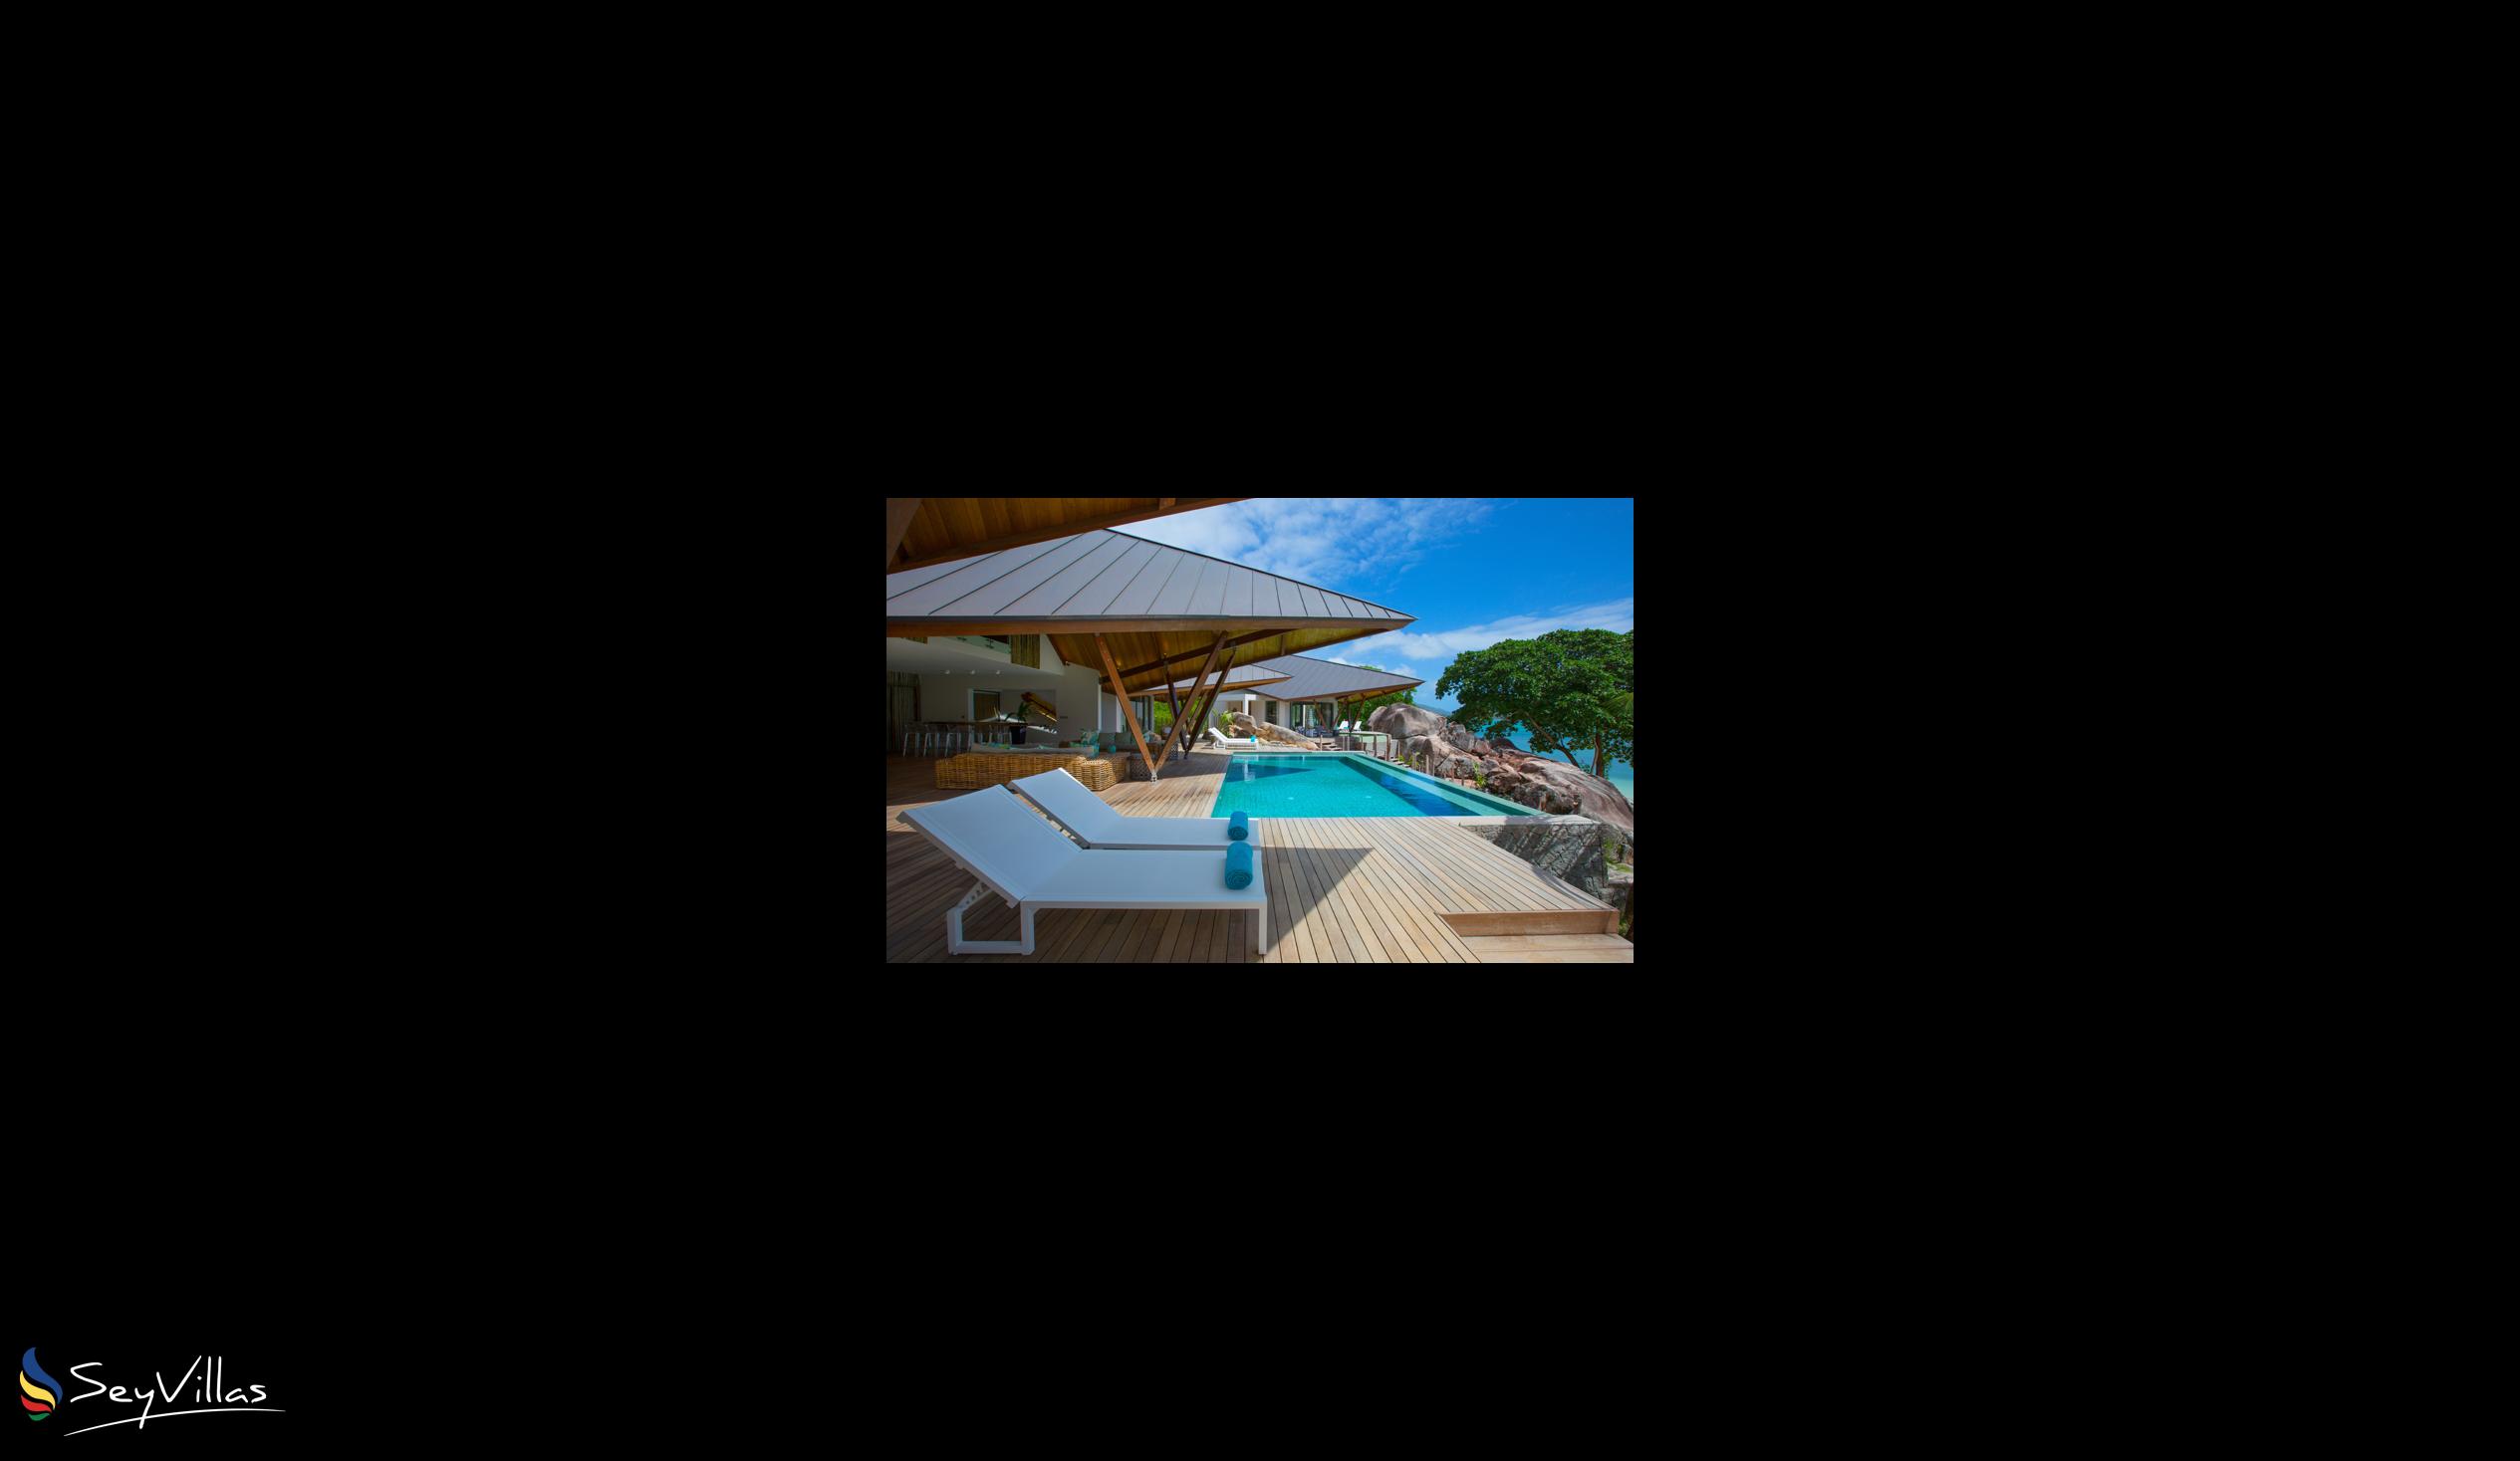 Foto 5: Villa Deckenia - Aussenbereich - Praslin (Seychellen)